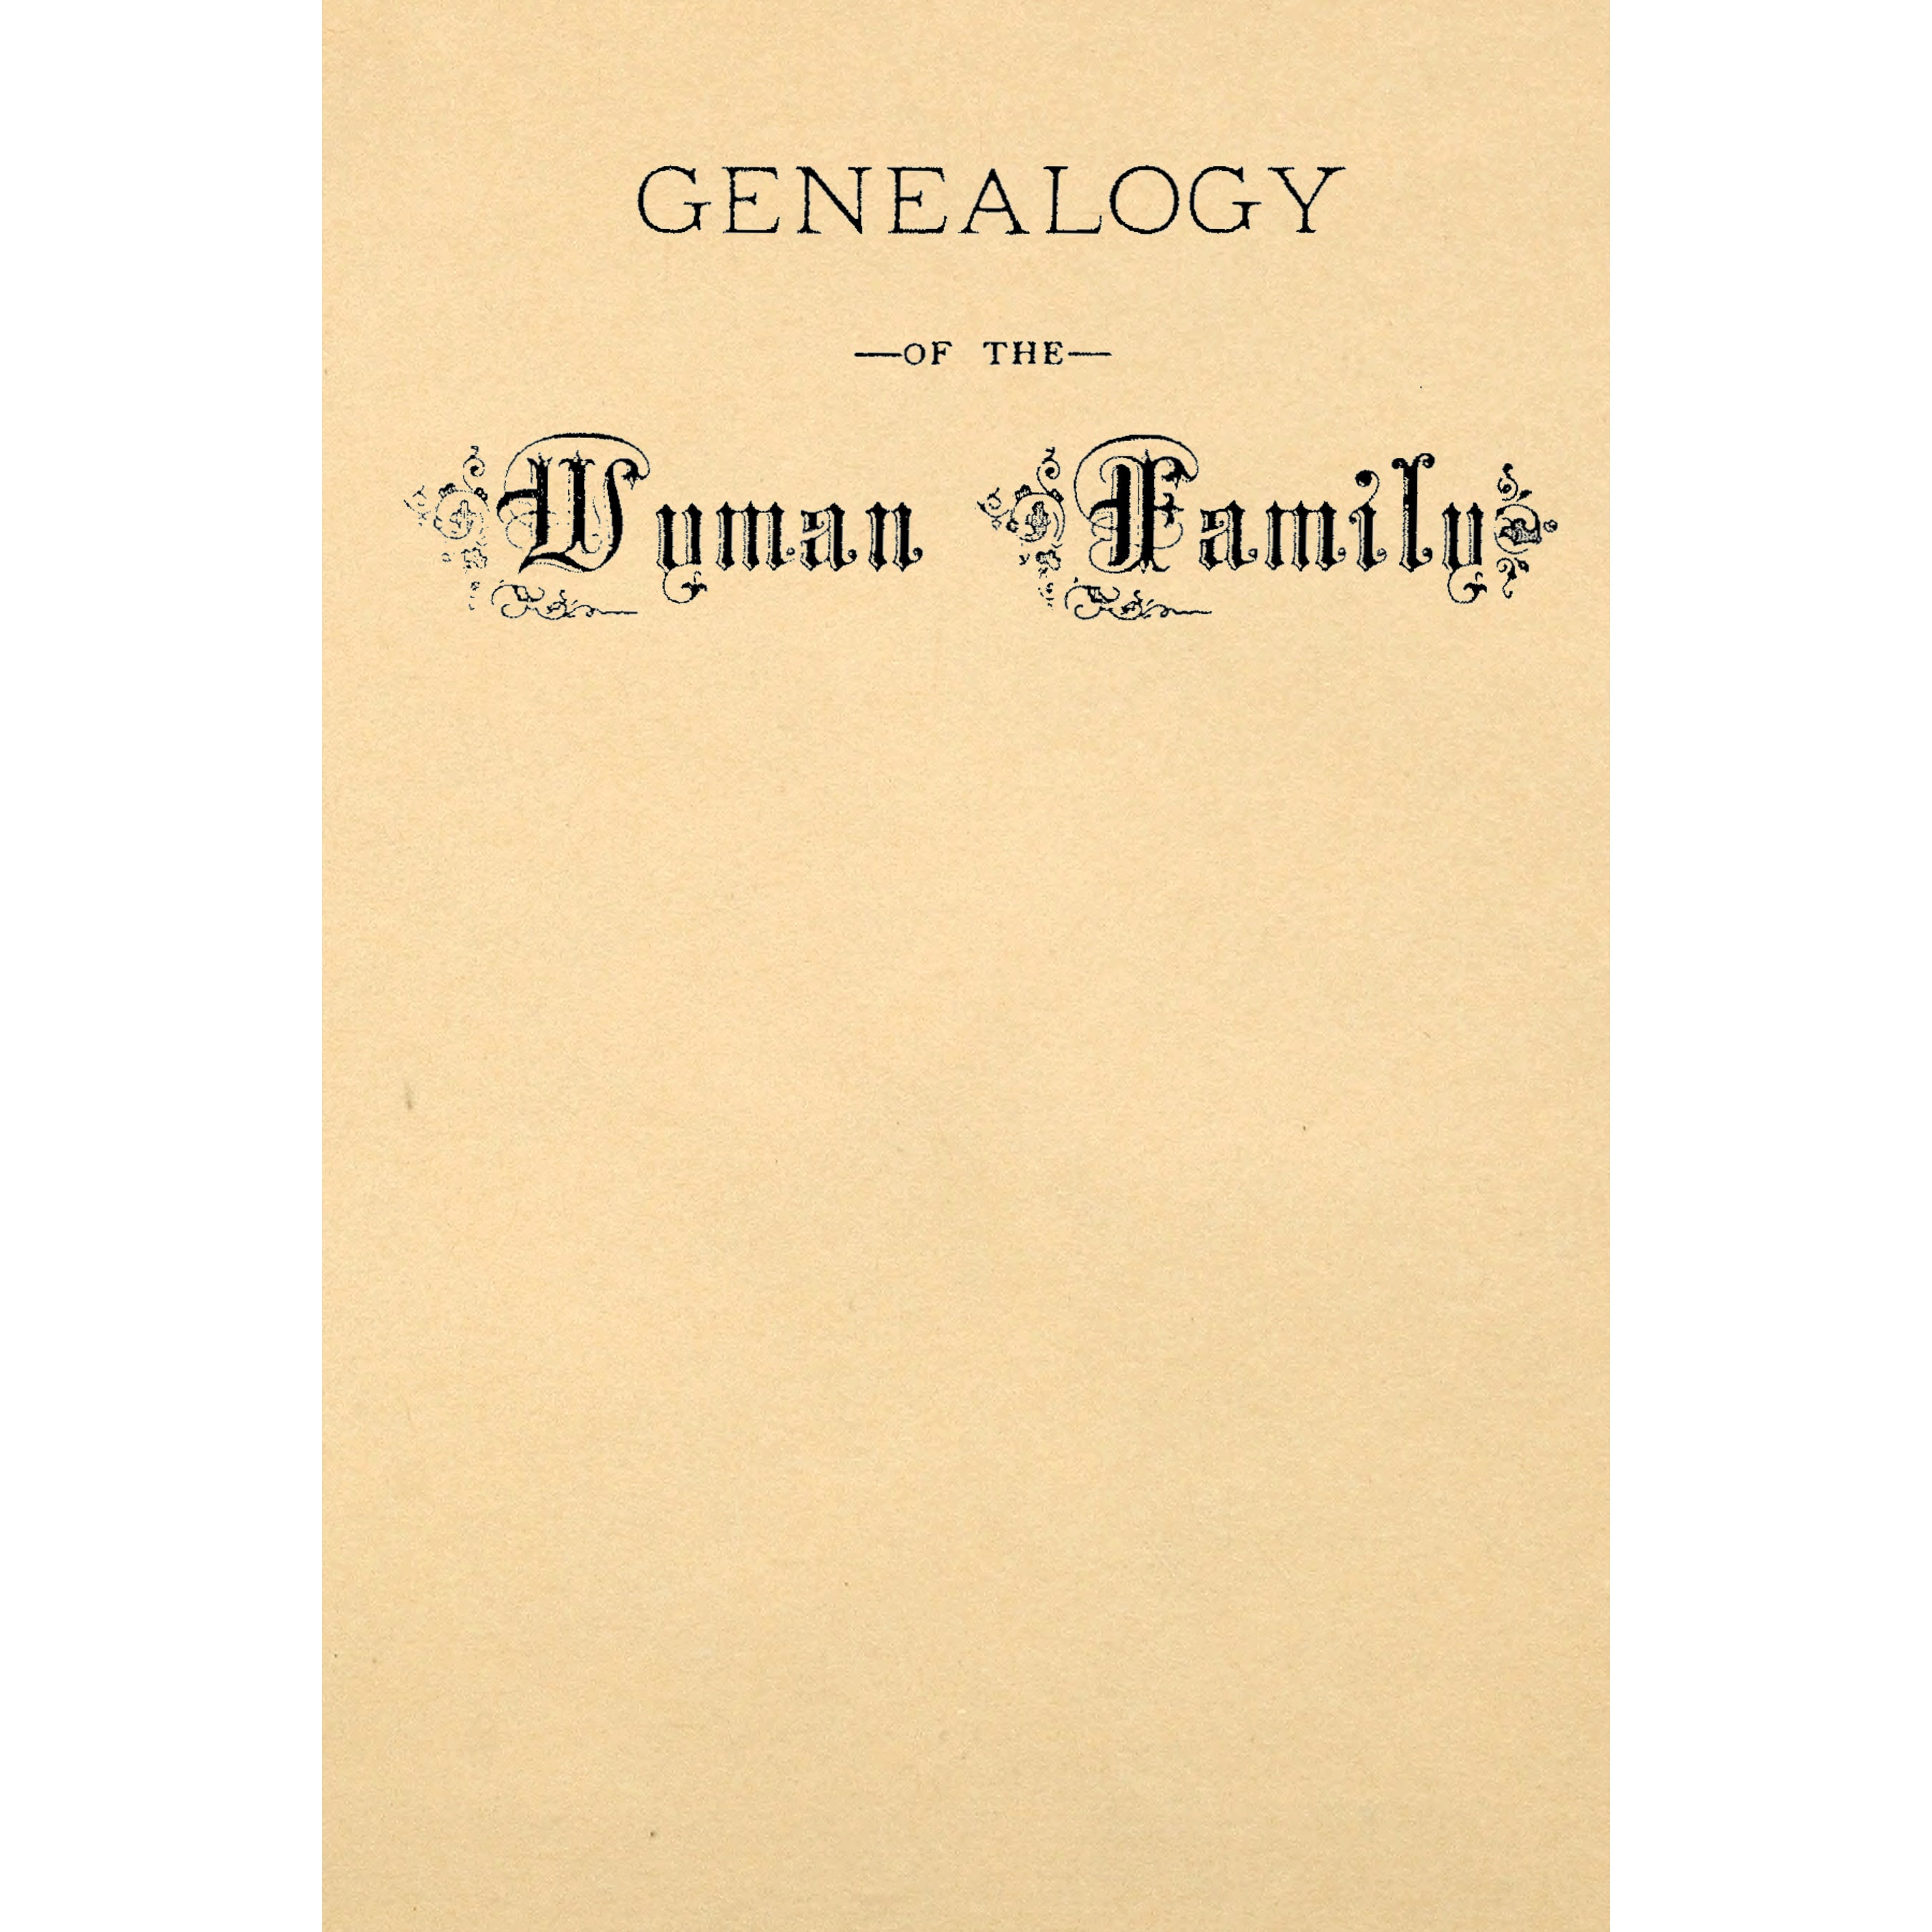 Genealogy of the Wyman Family